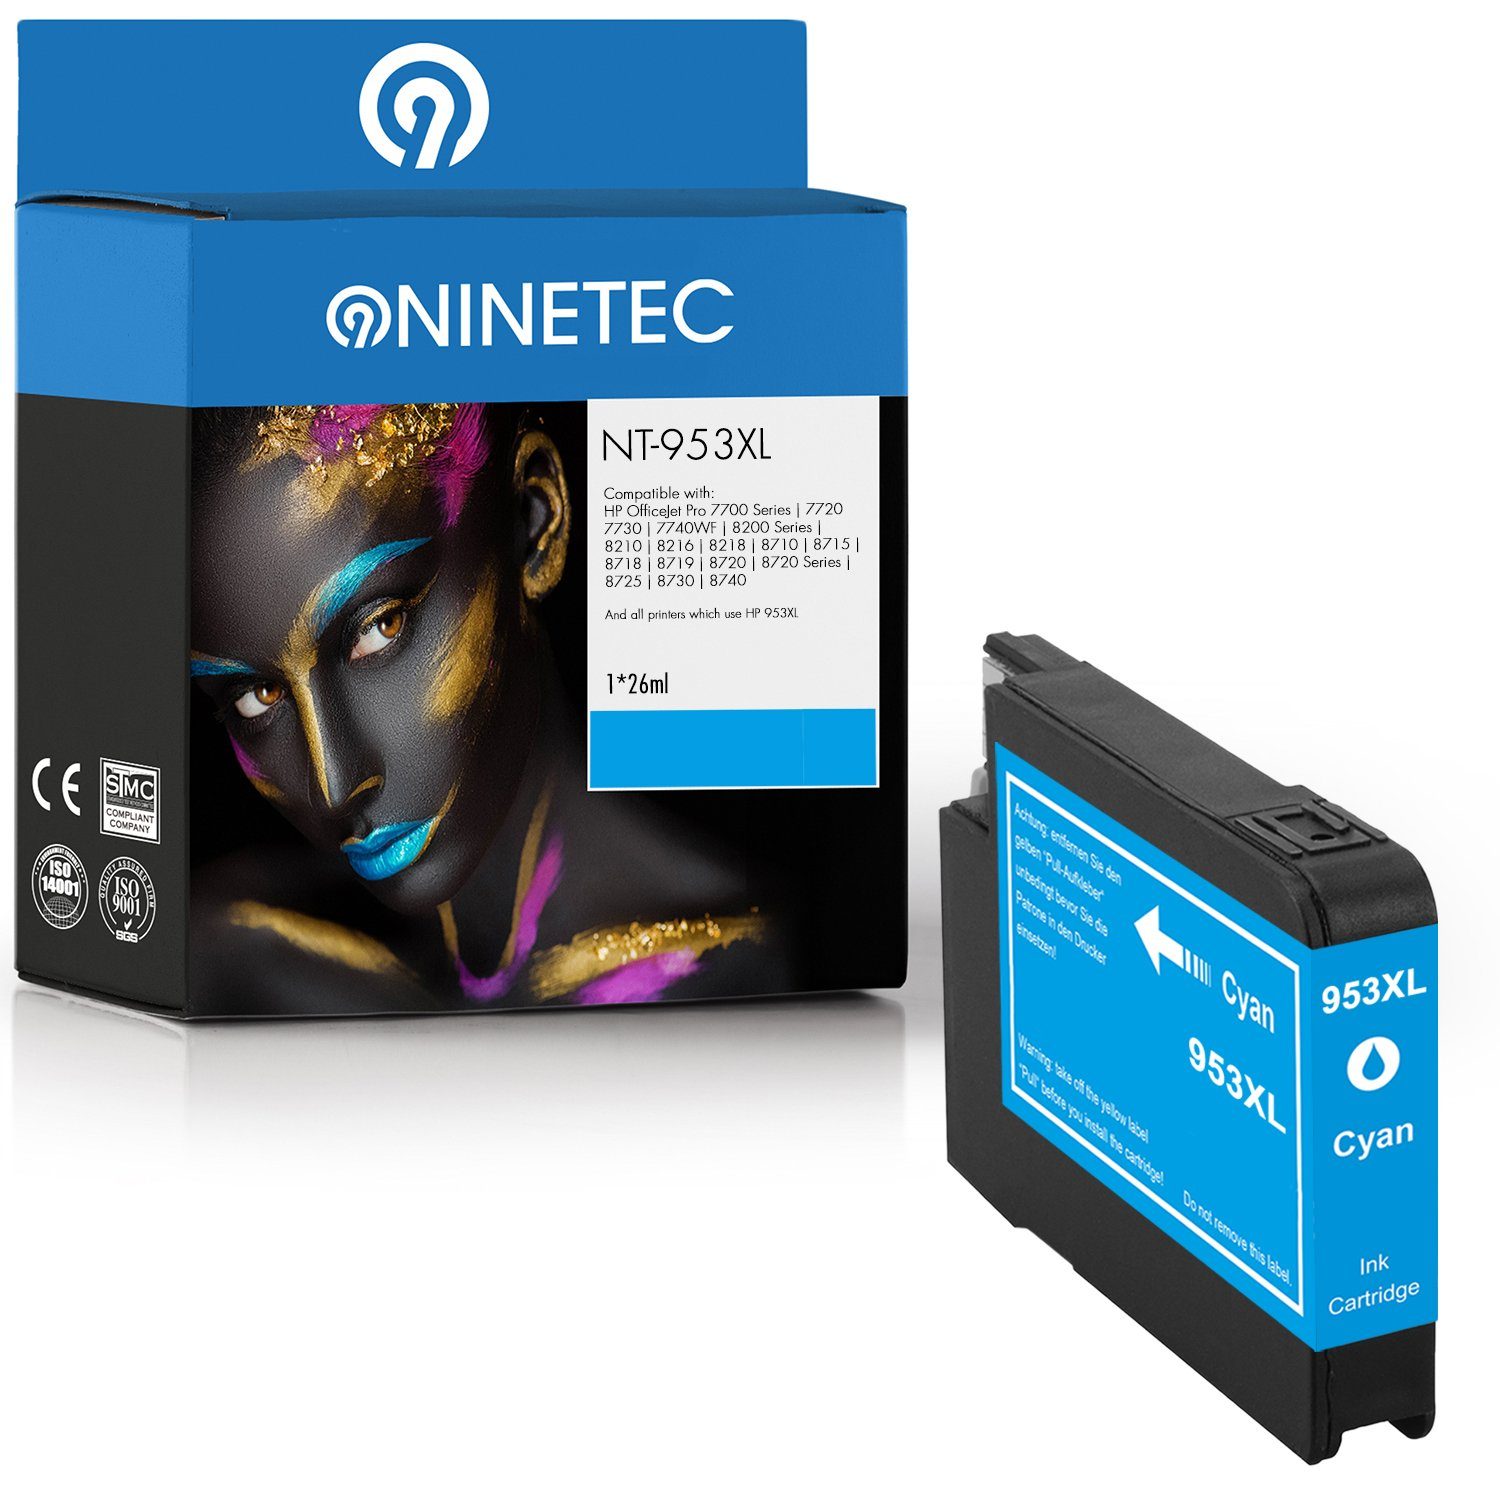 HP 953XL Cyan NINETEC ersetzt Tintenpatrone 953 XL